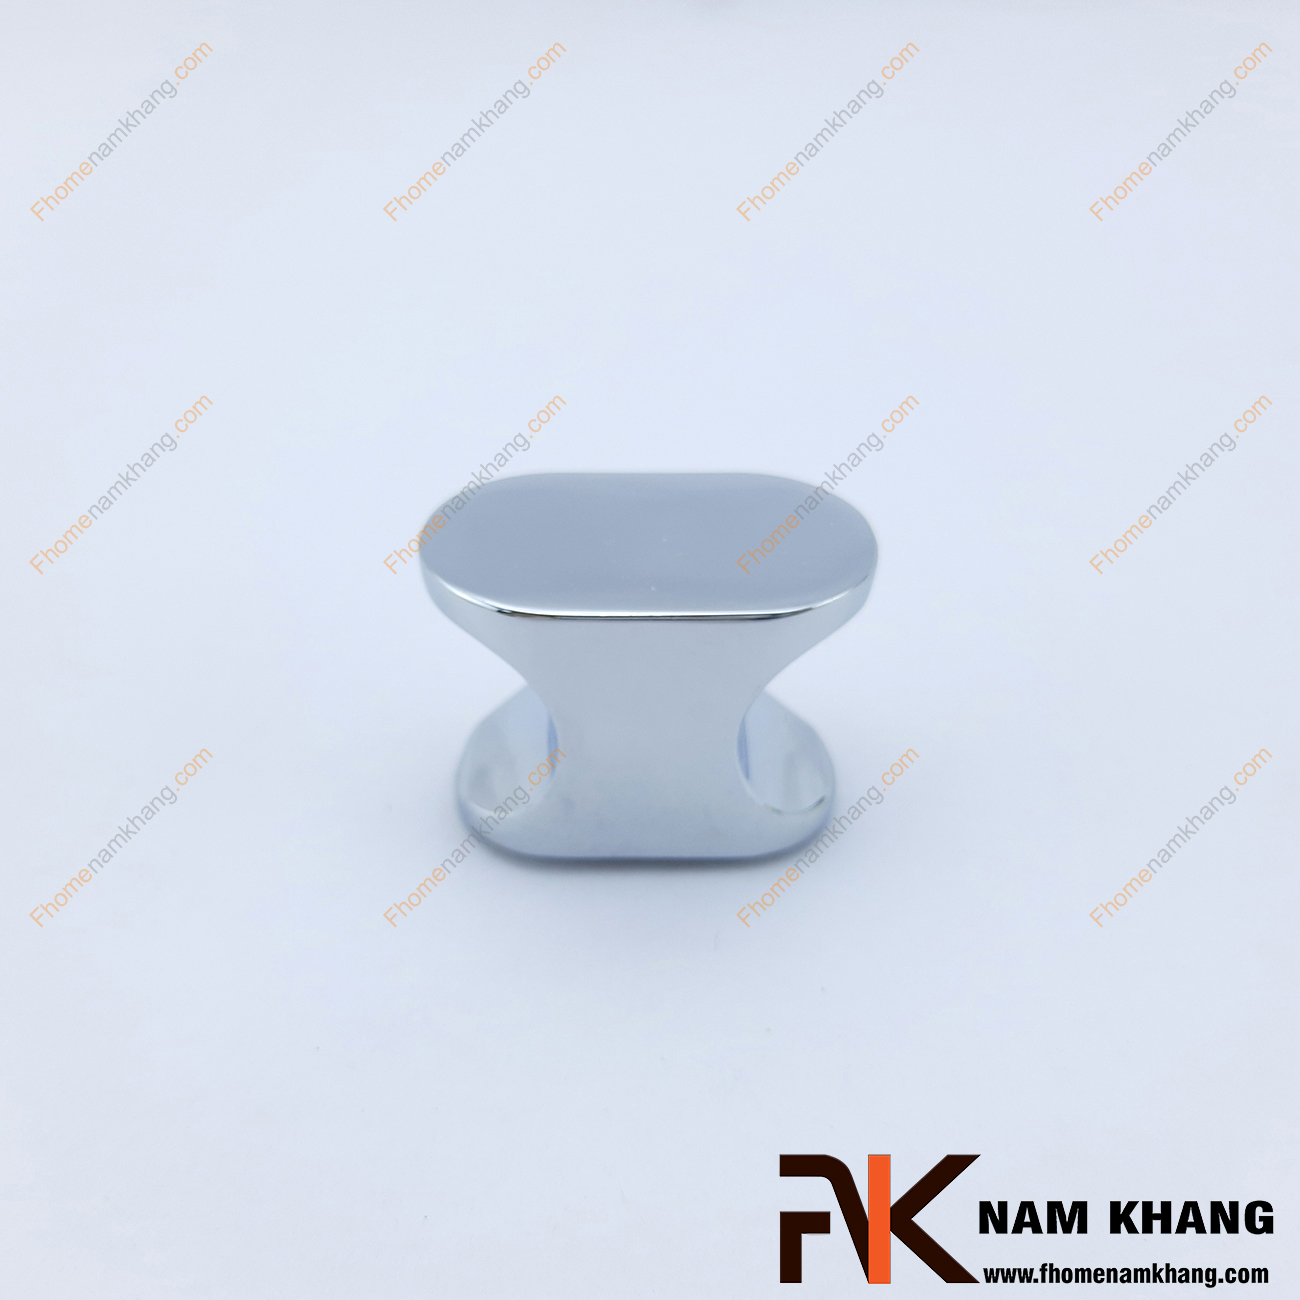 Núm nắm tủ màu trắng bạc NK133-X có thiết kế lạ mắt với phần thân lõm vào bên trong vừa vặn một ngón tay để có thể dễ dàng cầm nắm và đóng mở cánh cửa tủ. Sản phẩm được mạ trắng bạc trên nền chất liệu hợp kim cao cấp 